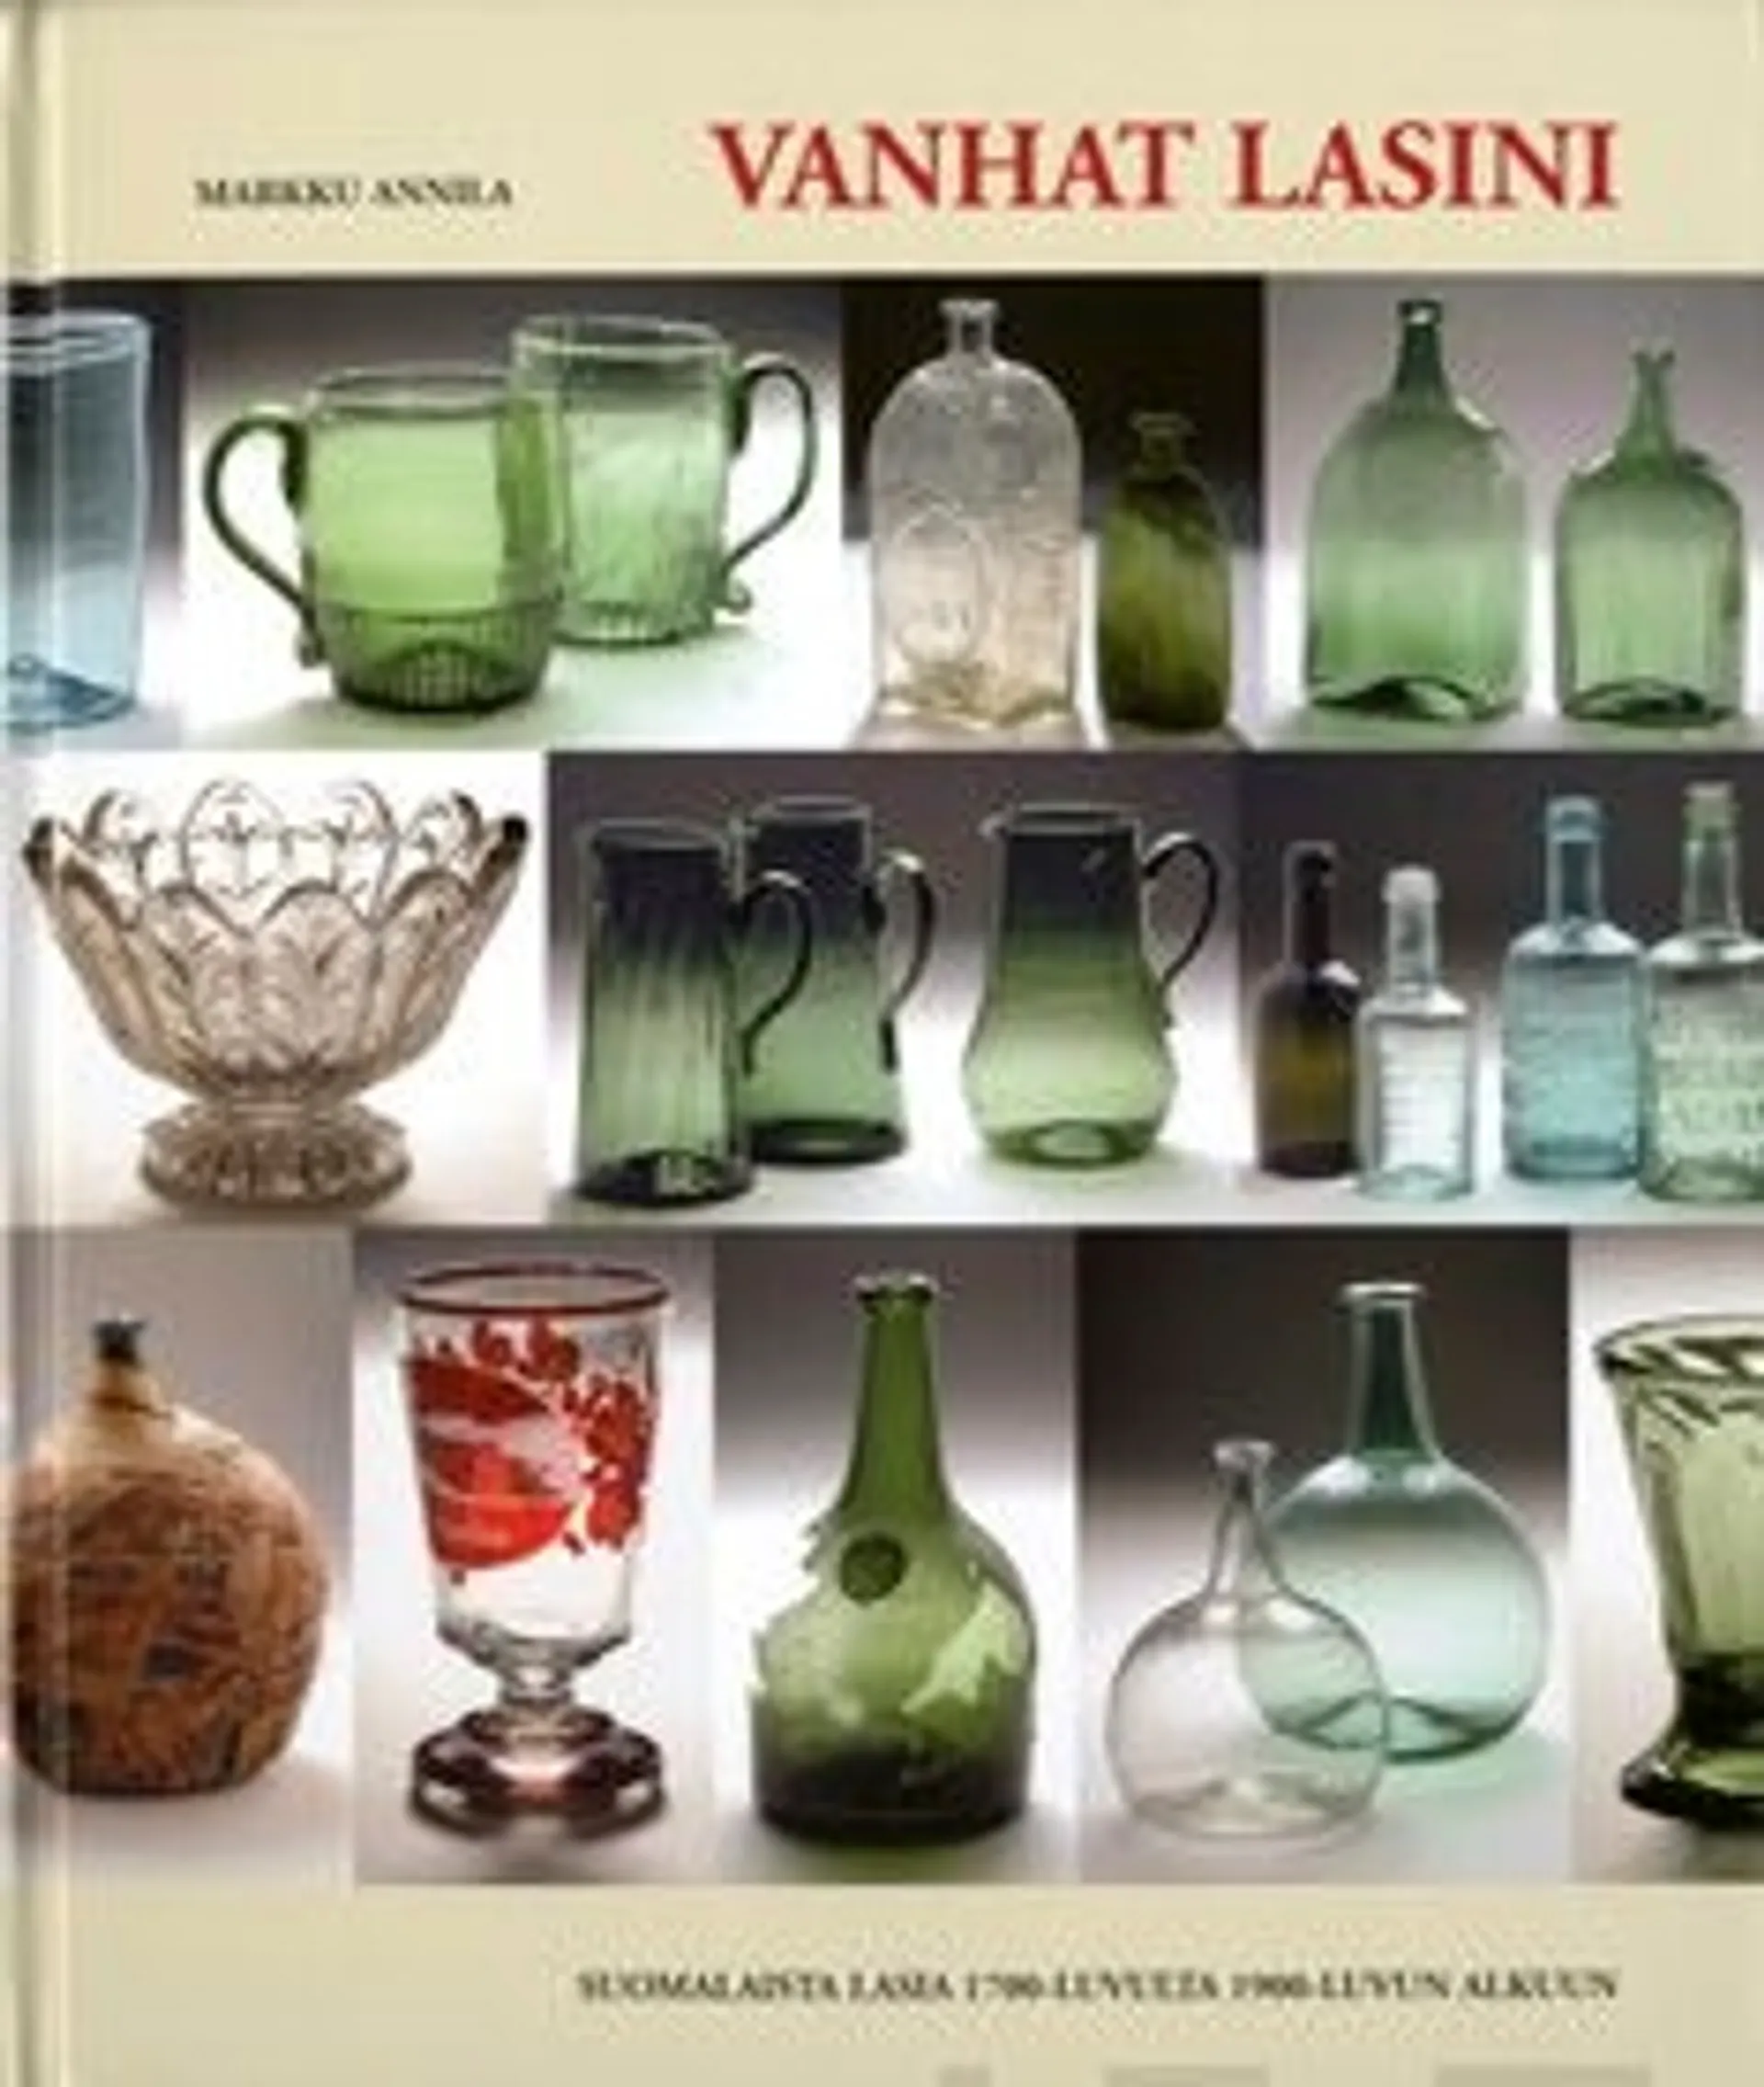 Annila, Vanhat lasini - suomalaista lasia 1700-luvulta 1900-luvun alkuun